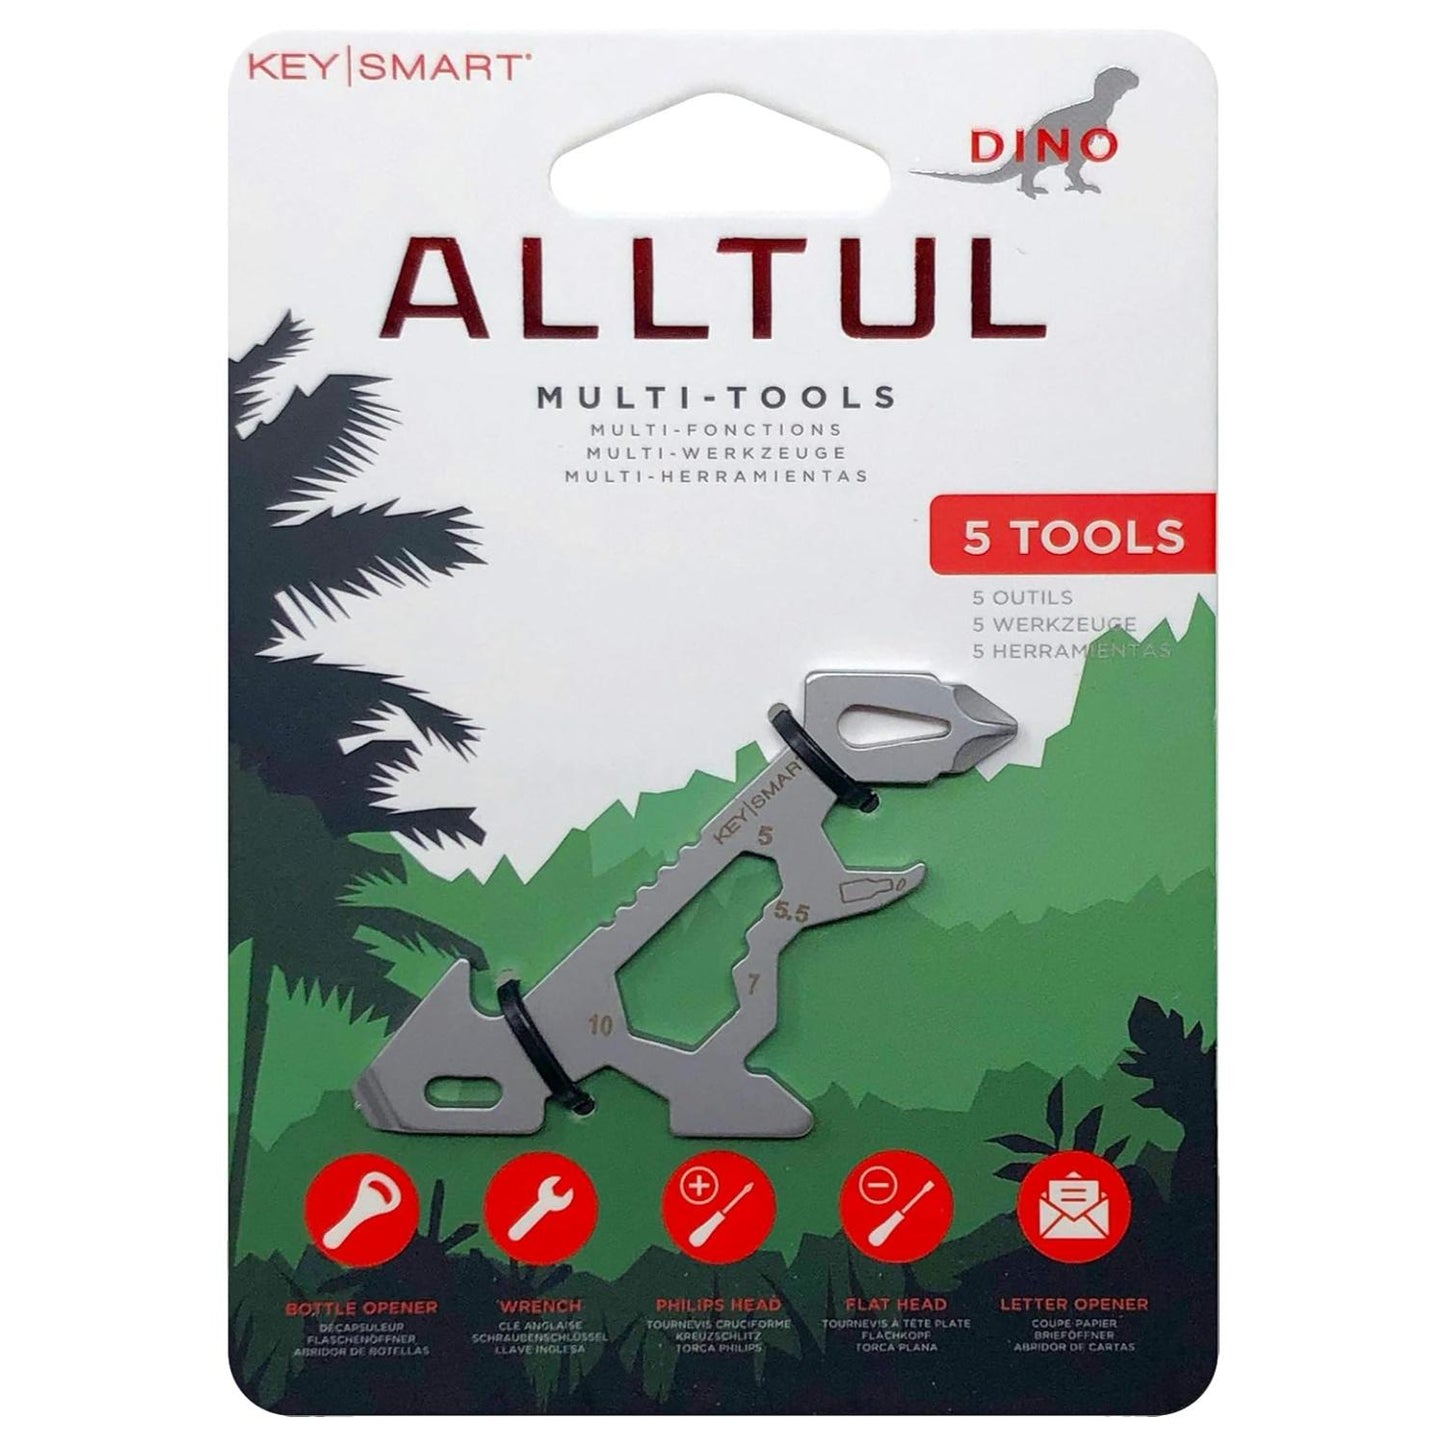 KeySmart Alltul Multi-tool Dino for Keyring or Wallet Stainless Steel